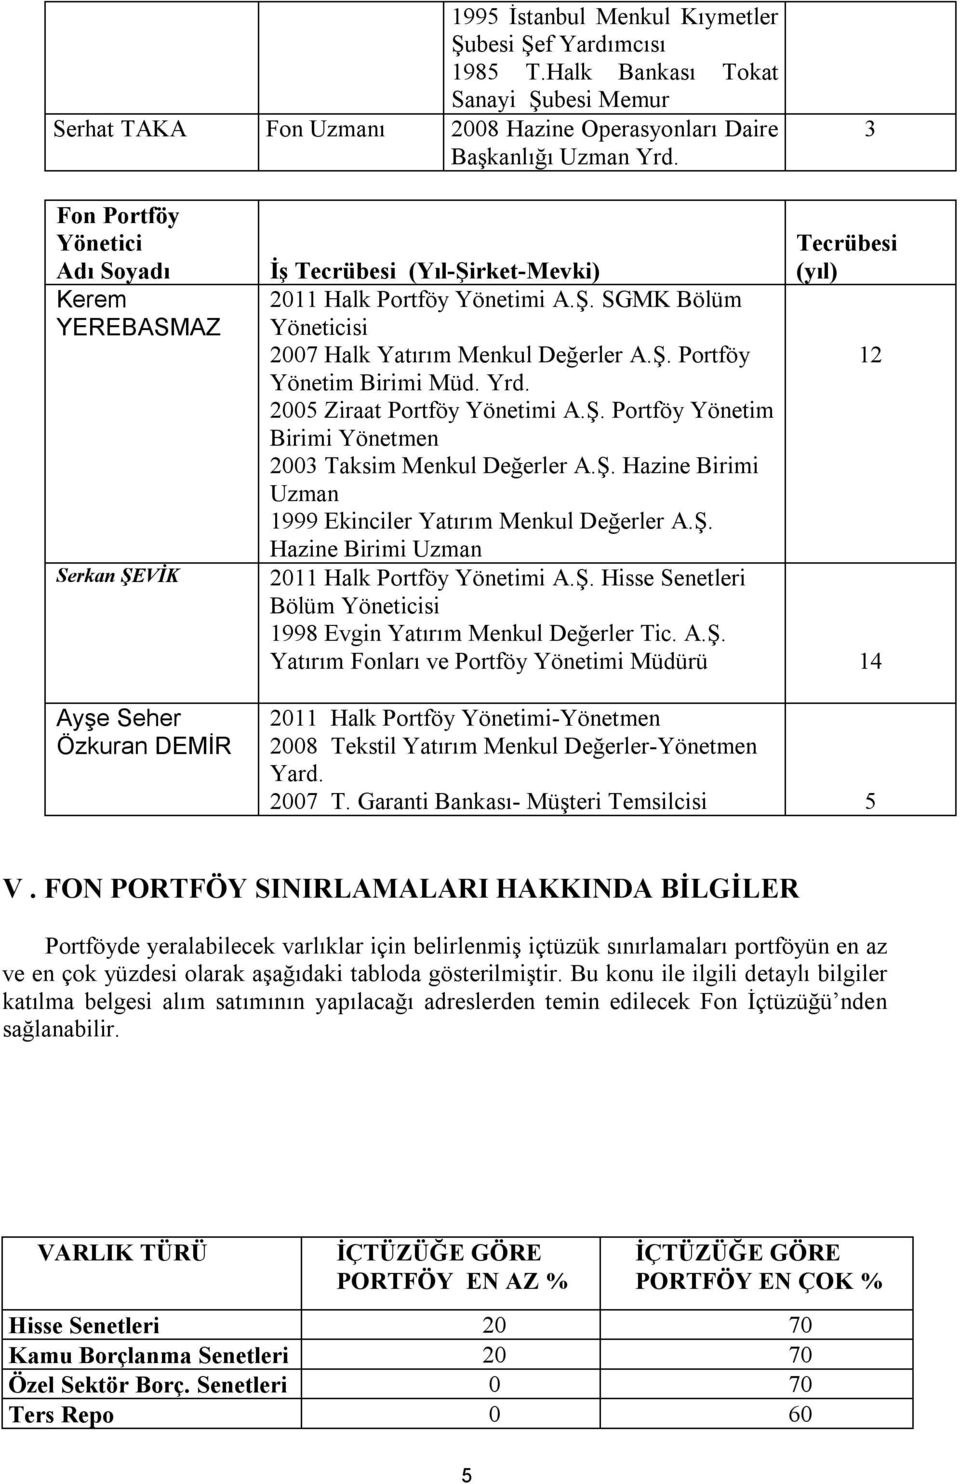 Ş. Portföy 12 Yönetim Birimi Müd. Yrd. 2005 Ziraat Portföy Yönetimi A.Ş. Portföy Yönetim Birimi Yönetmen 2003 Taksim Menkul Değerler A.Ş. Hazine Birimi Uzman 1999 Ekinciler Yatırım Menkul Değerler A.